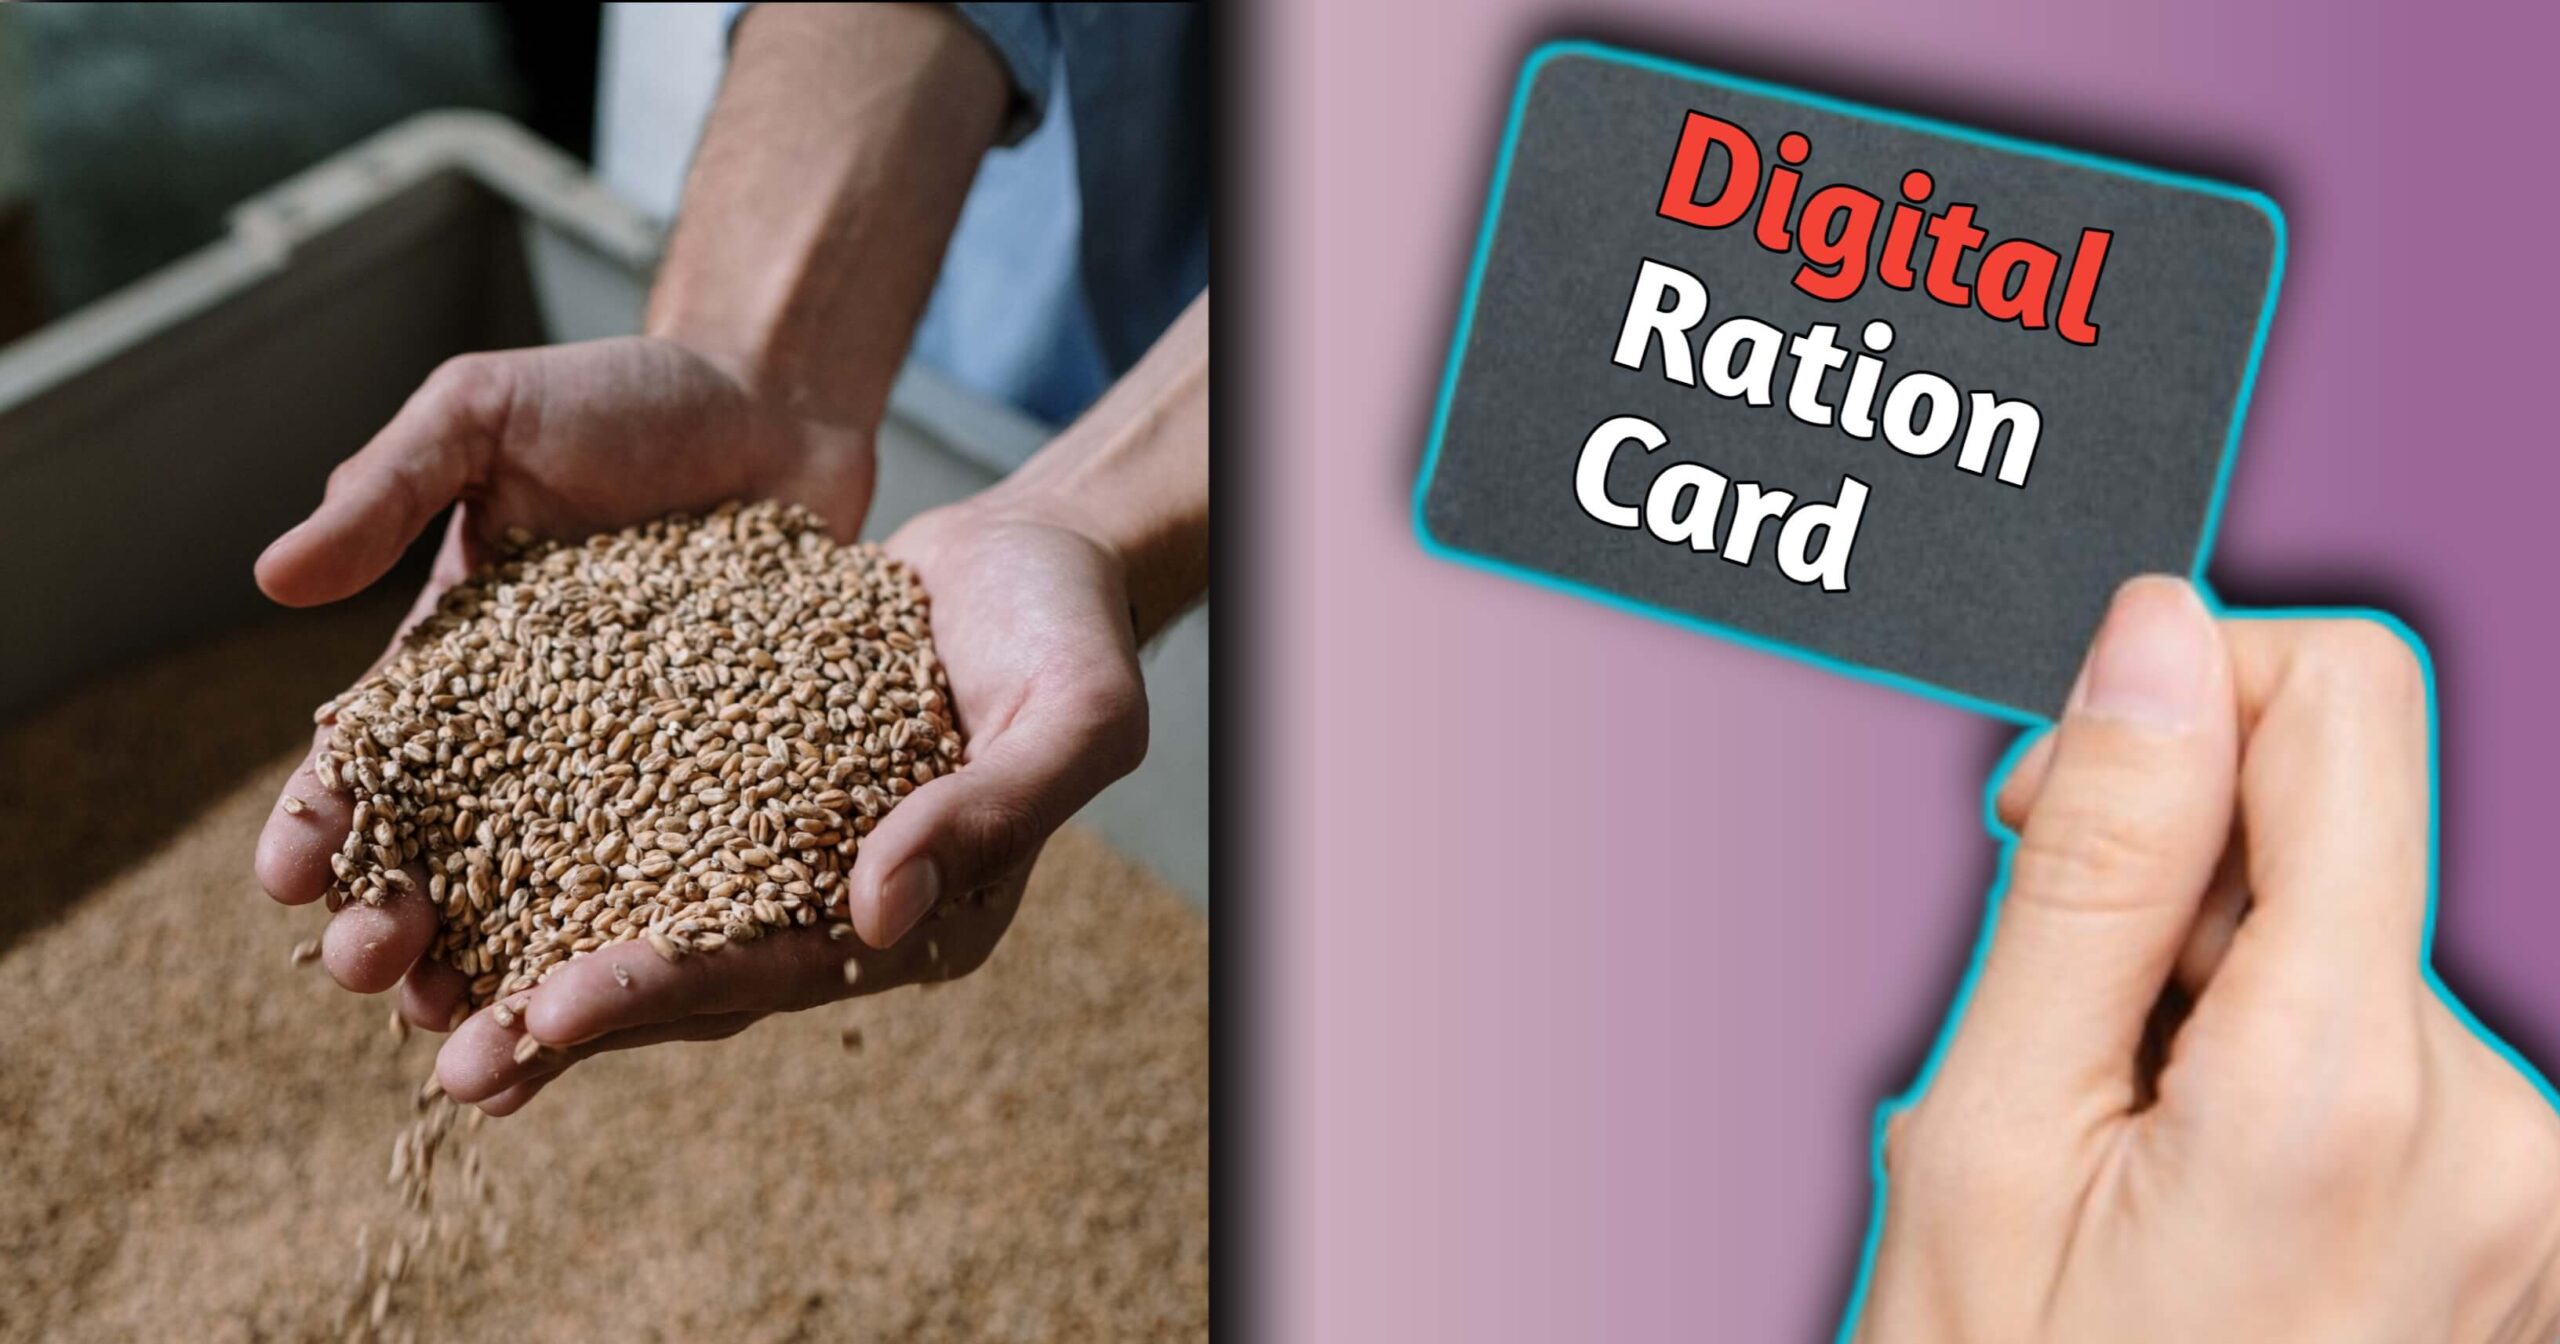 Digital ration card download